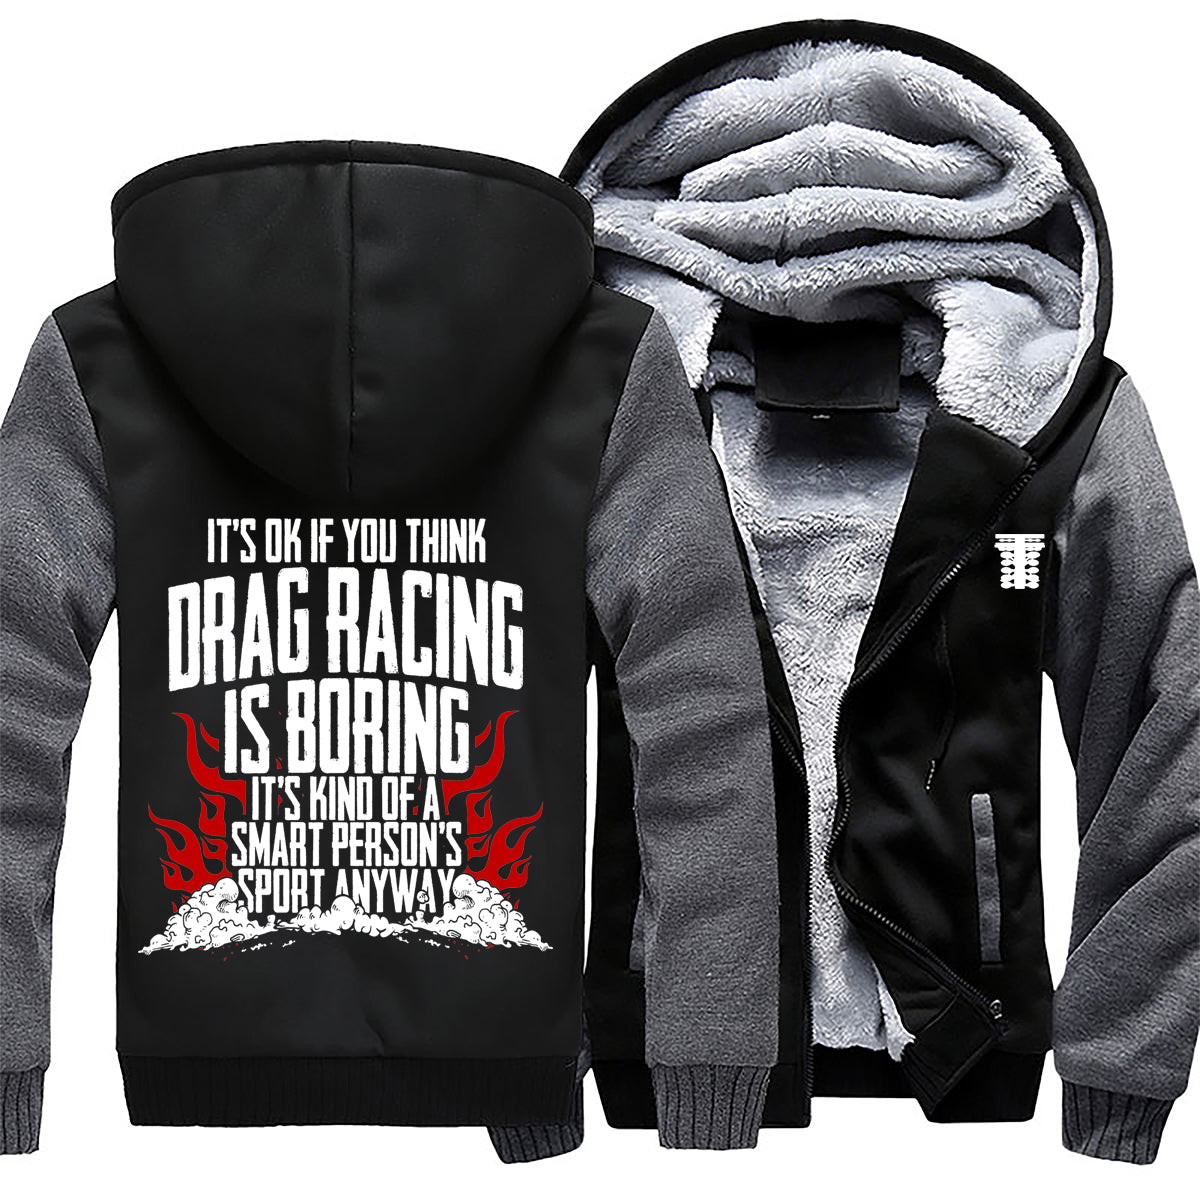 It's Okay If You Think Drag Racing Is Boring Jacket